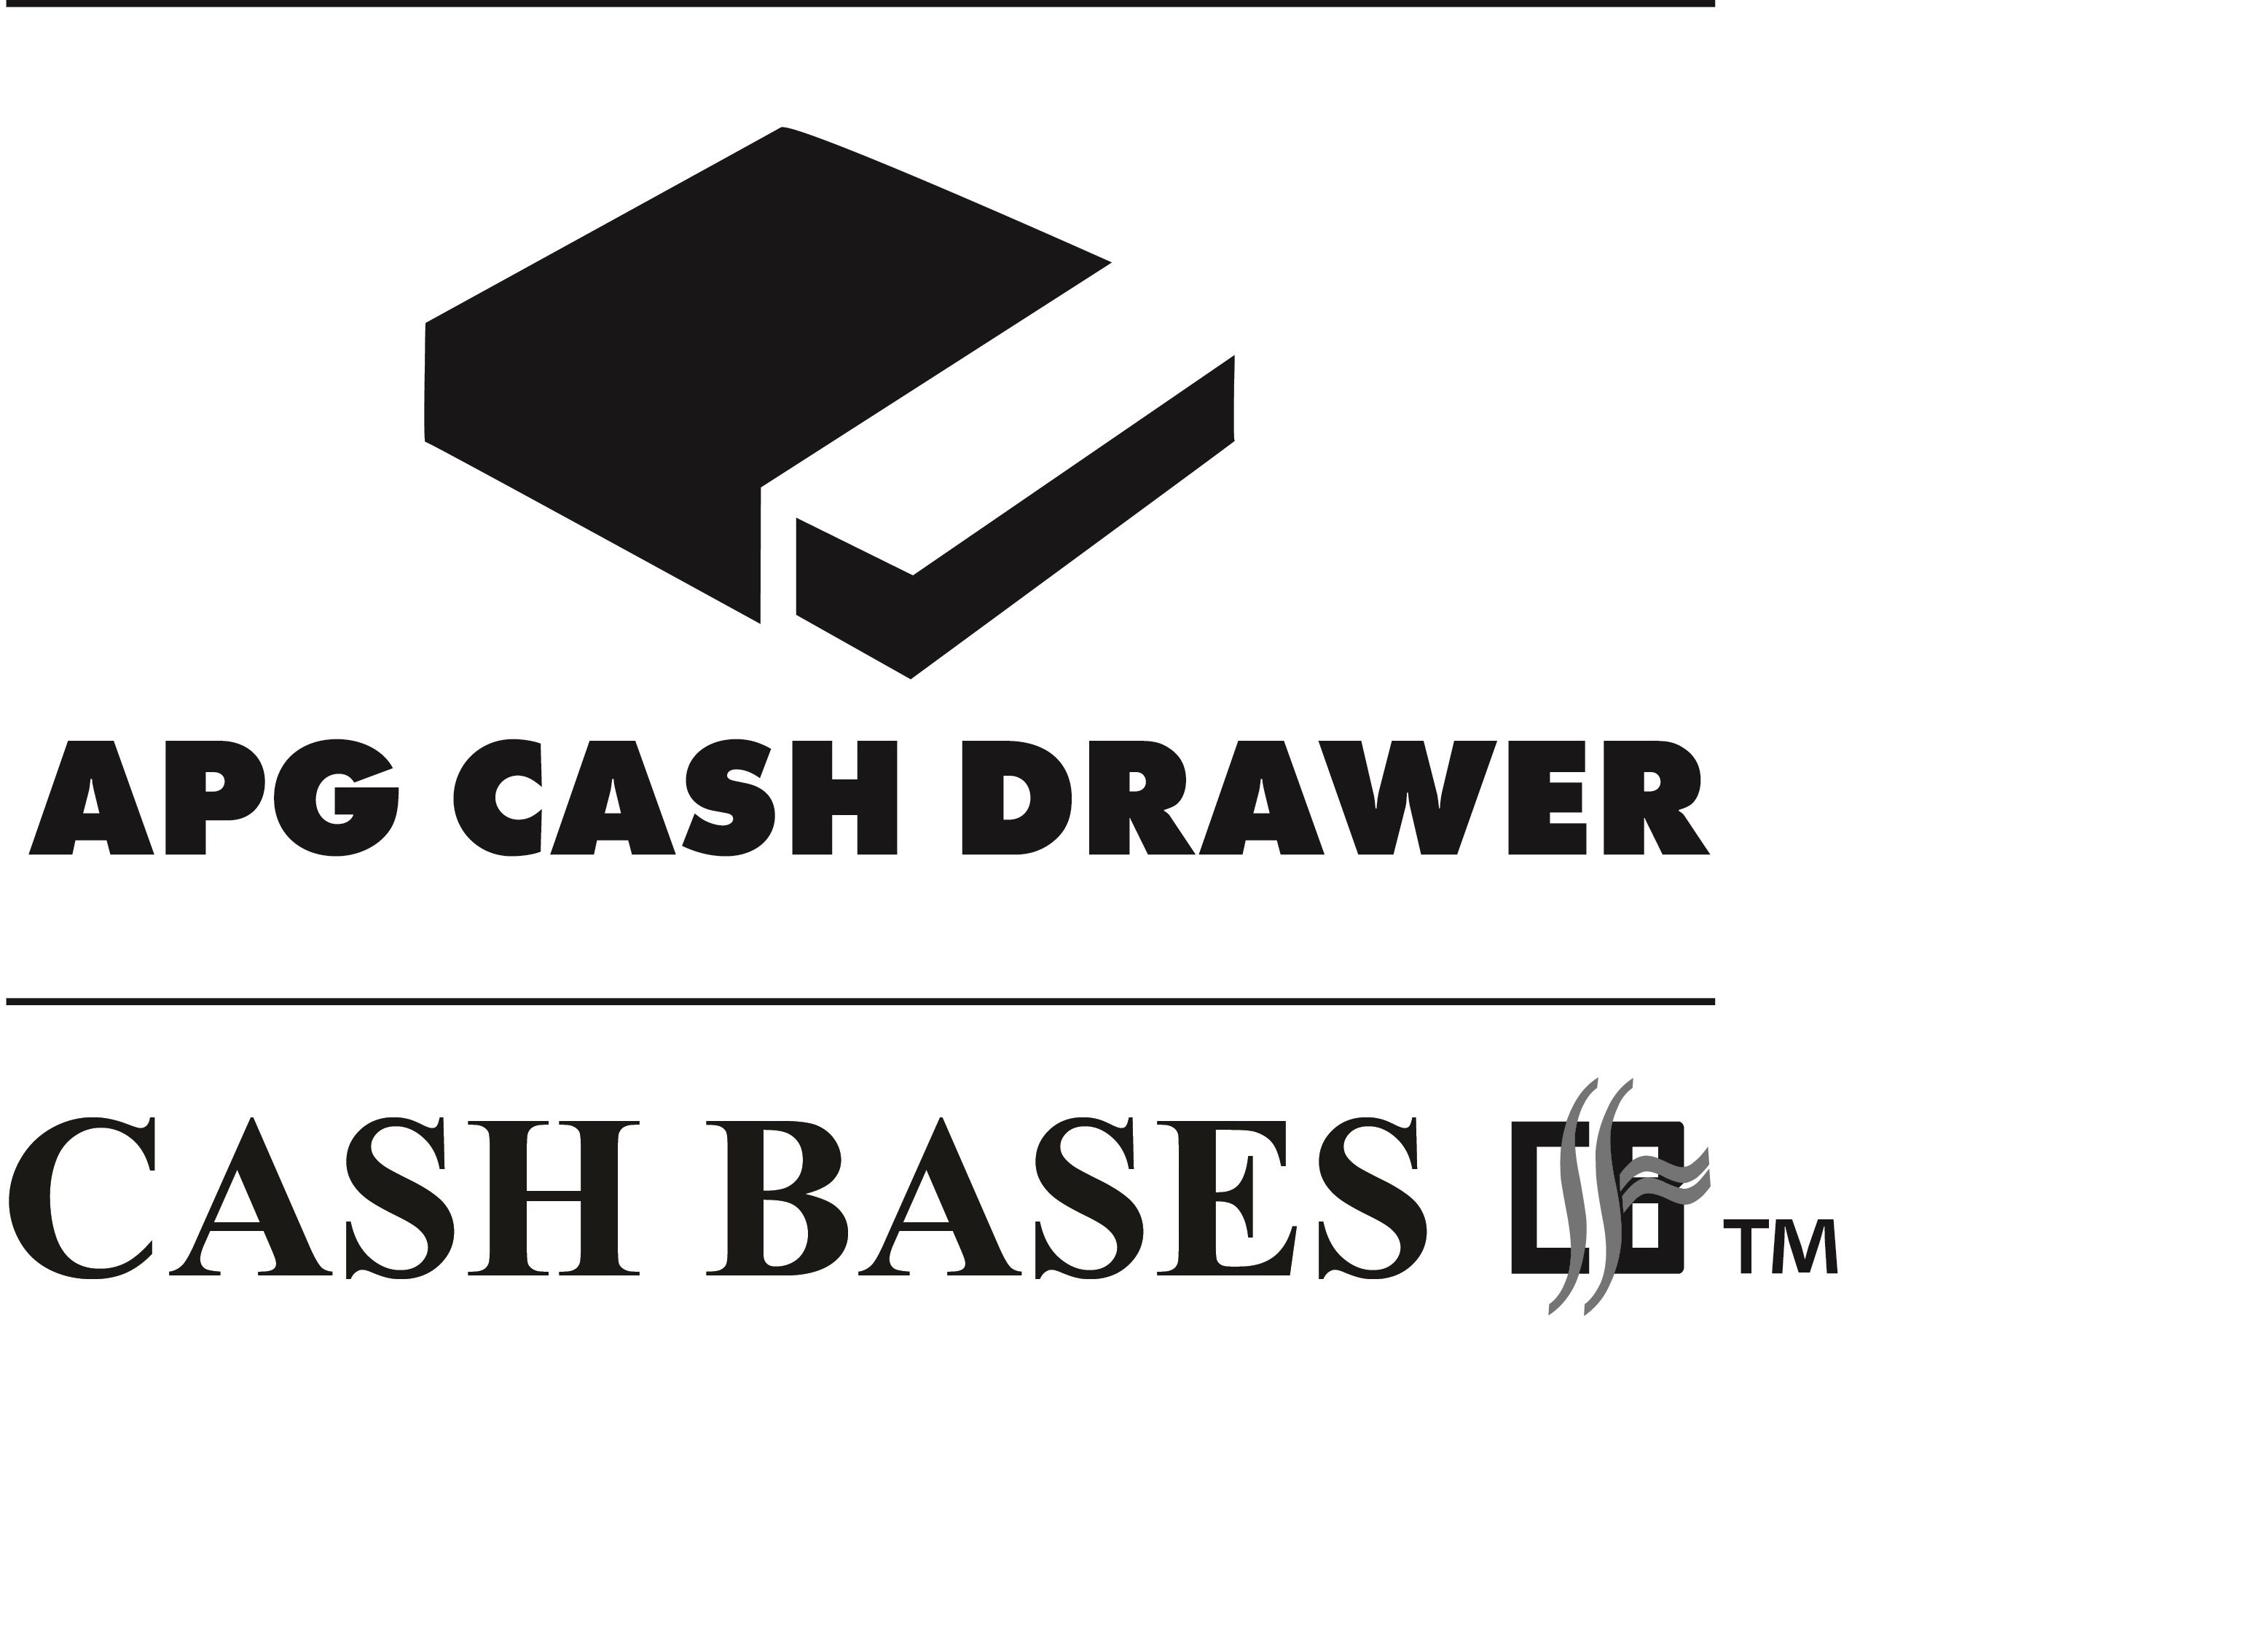  APG CASH DRAWER CASH BASES